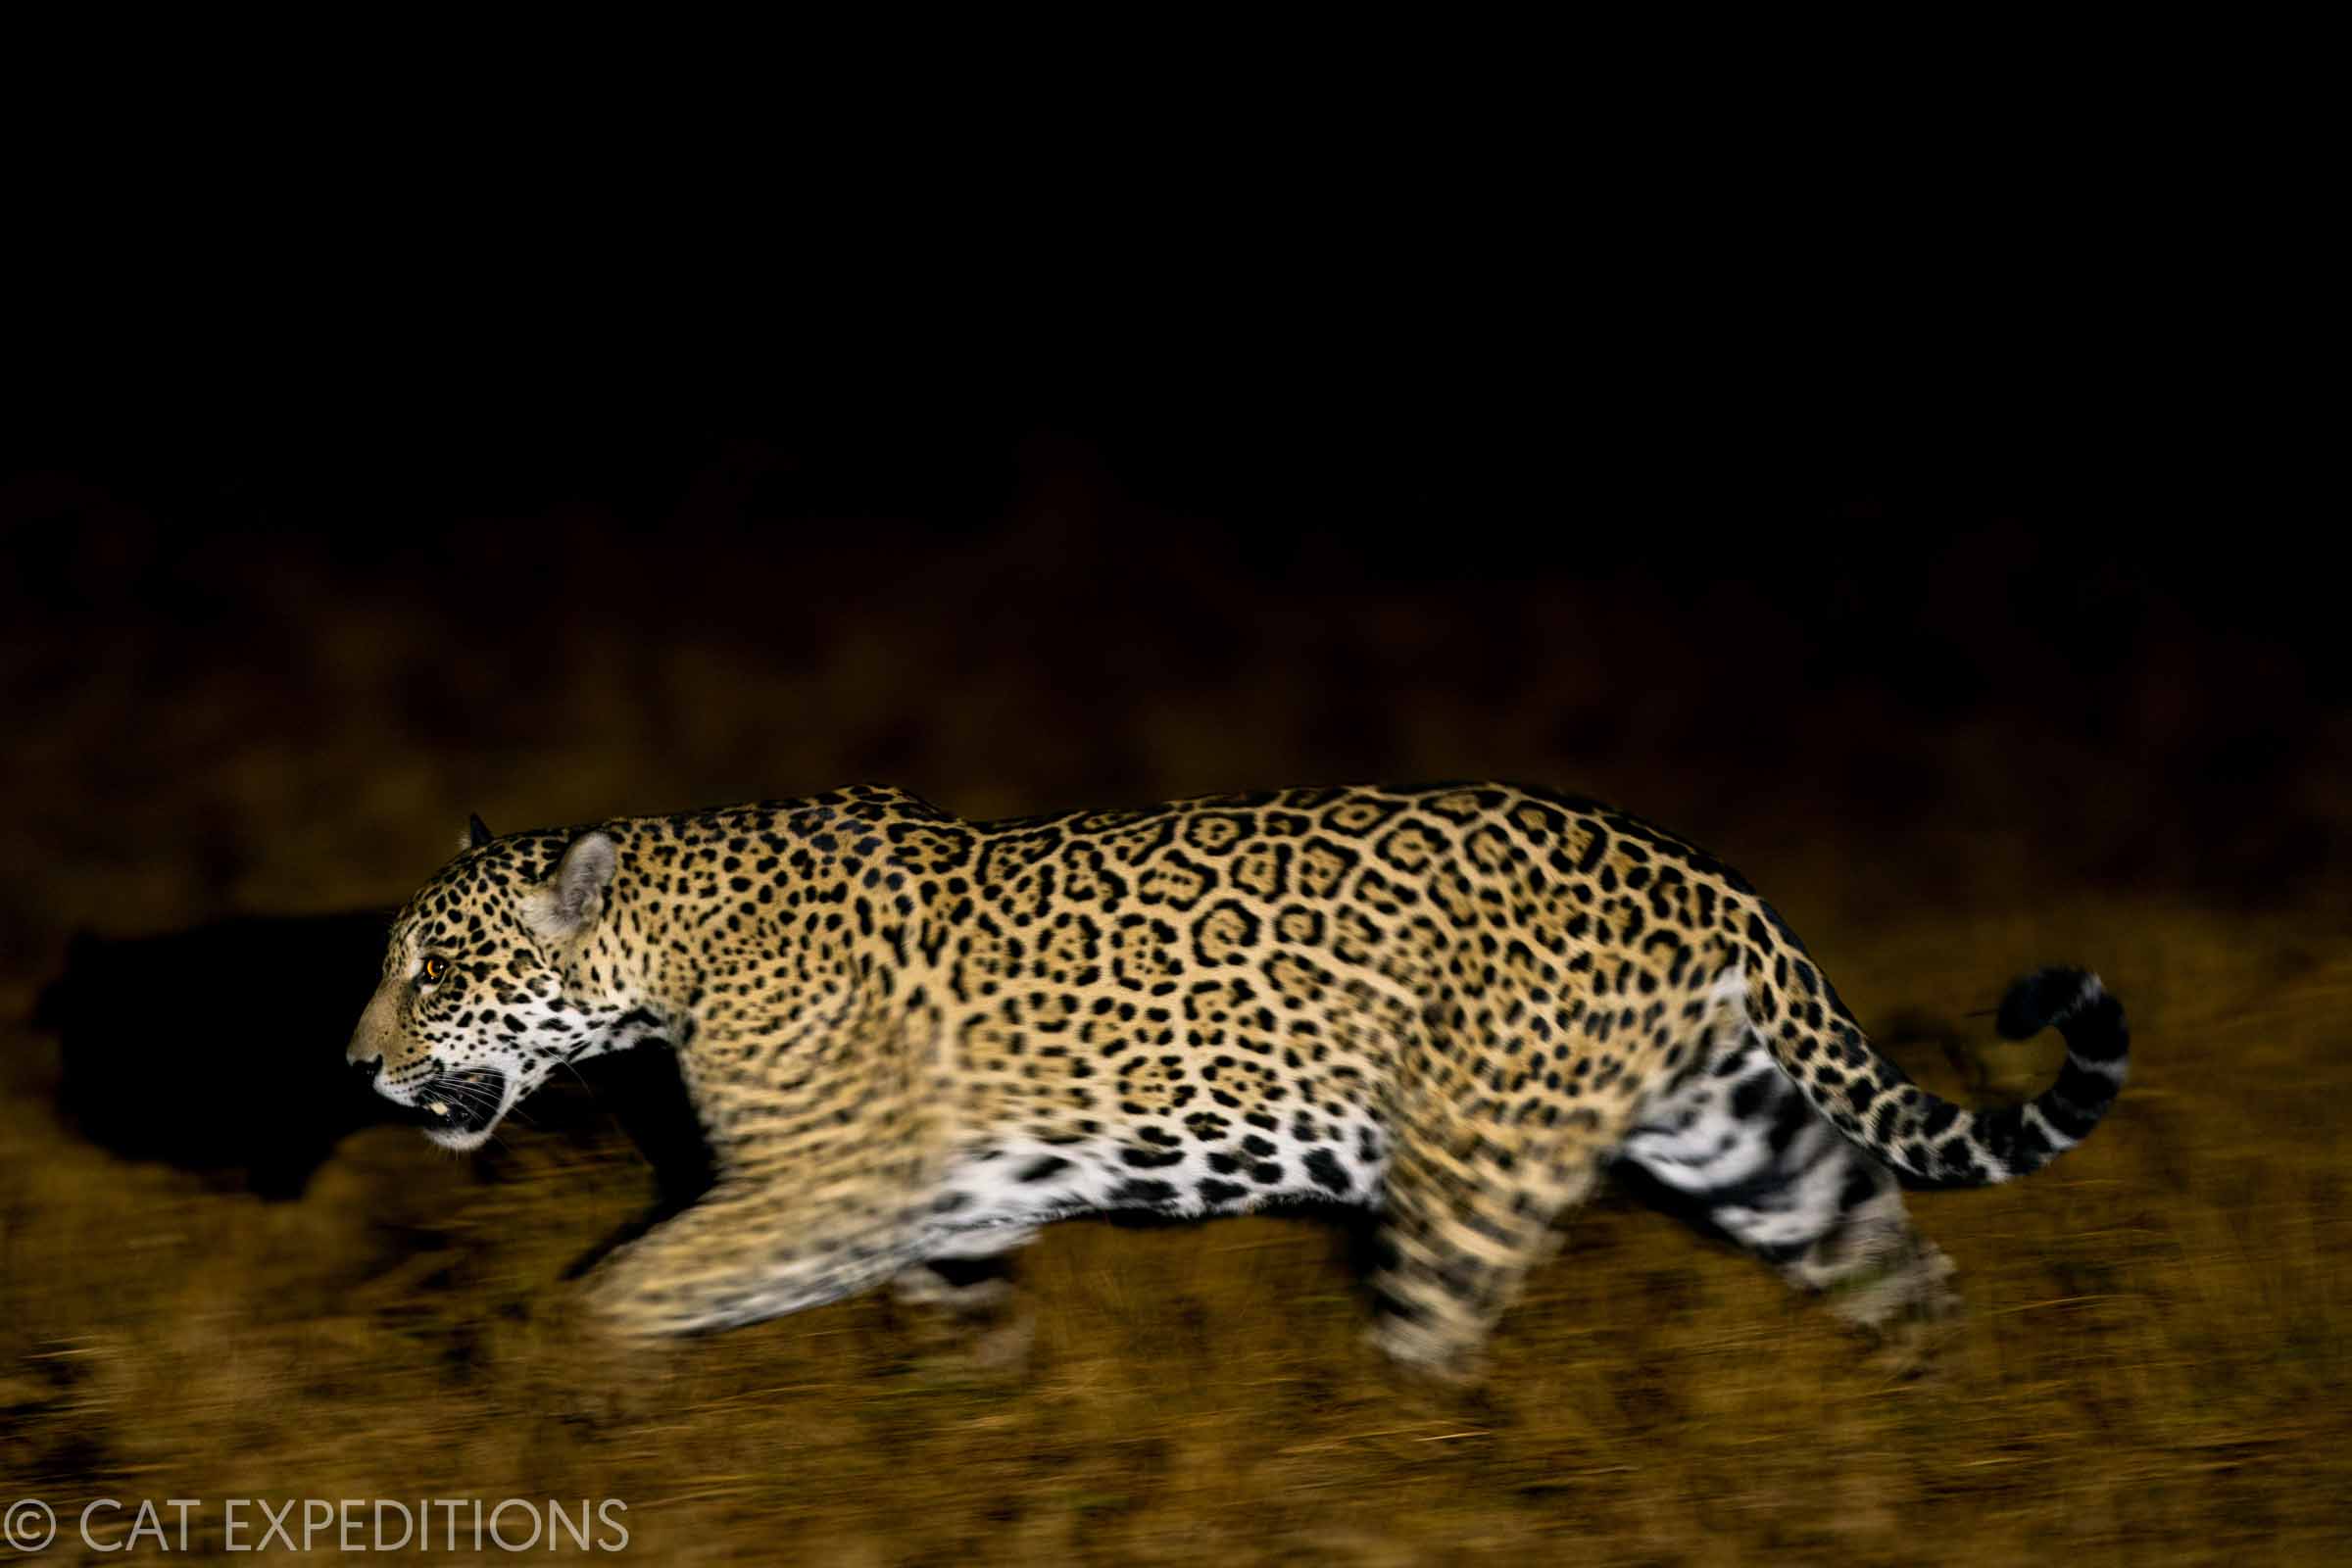 Jaguar at night in Brazil